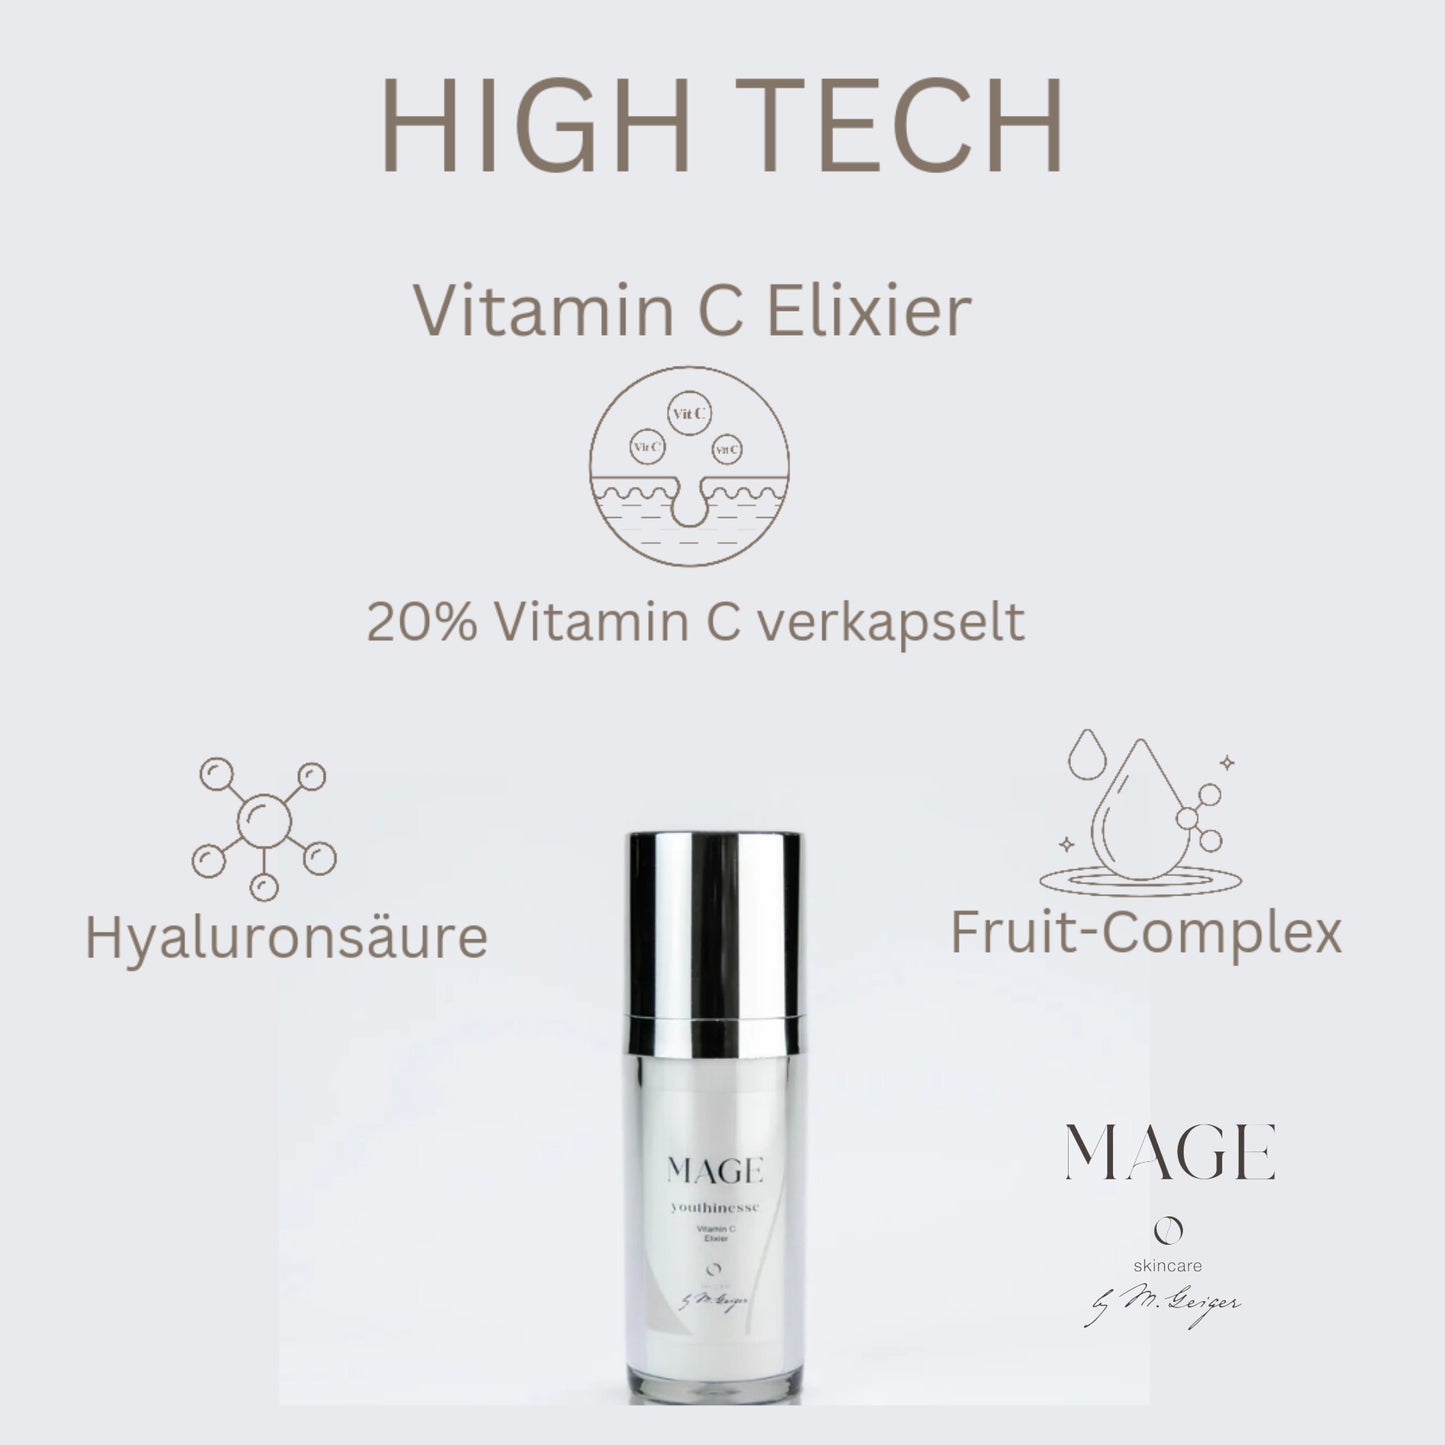 Vitamin C Elixier 20% festigt die Haut nachweislich, aktiviert Collagenfasern, beseitigt Flecken, verleiht Glow